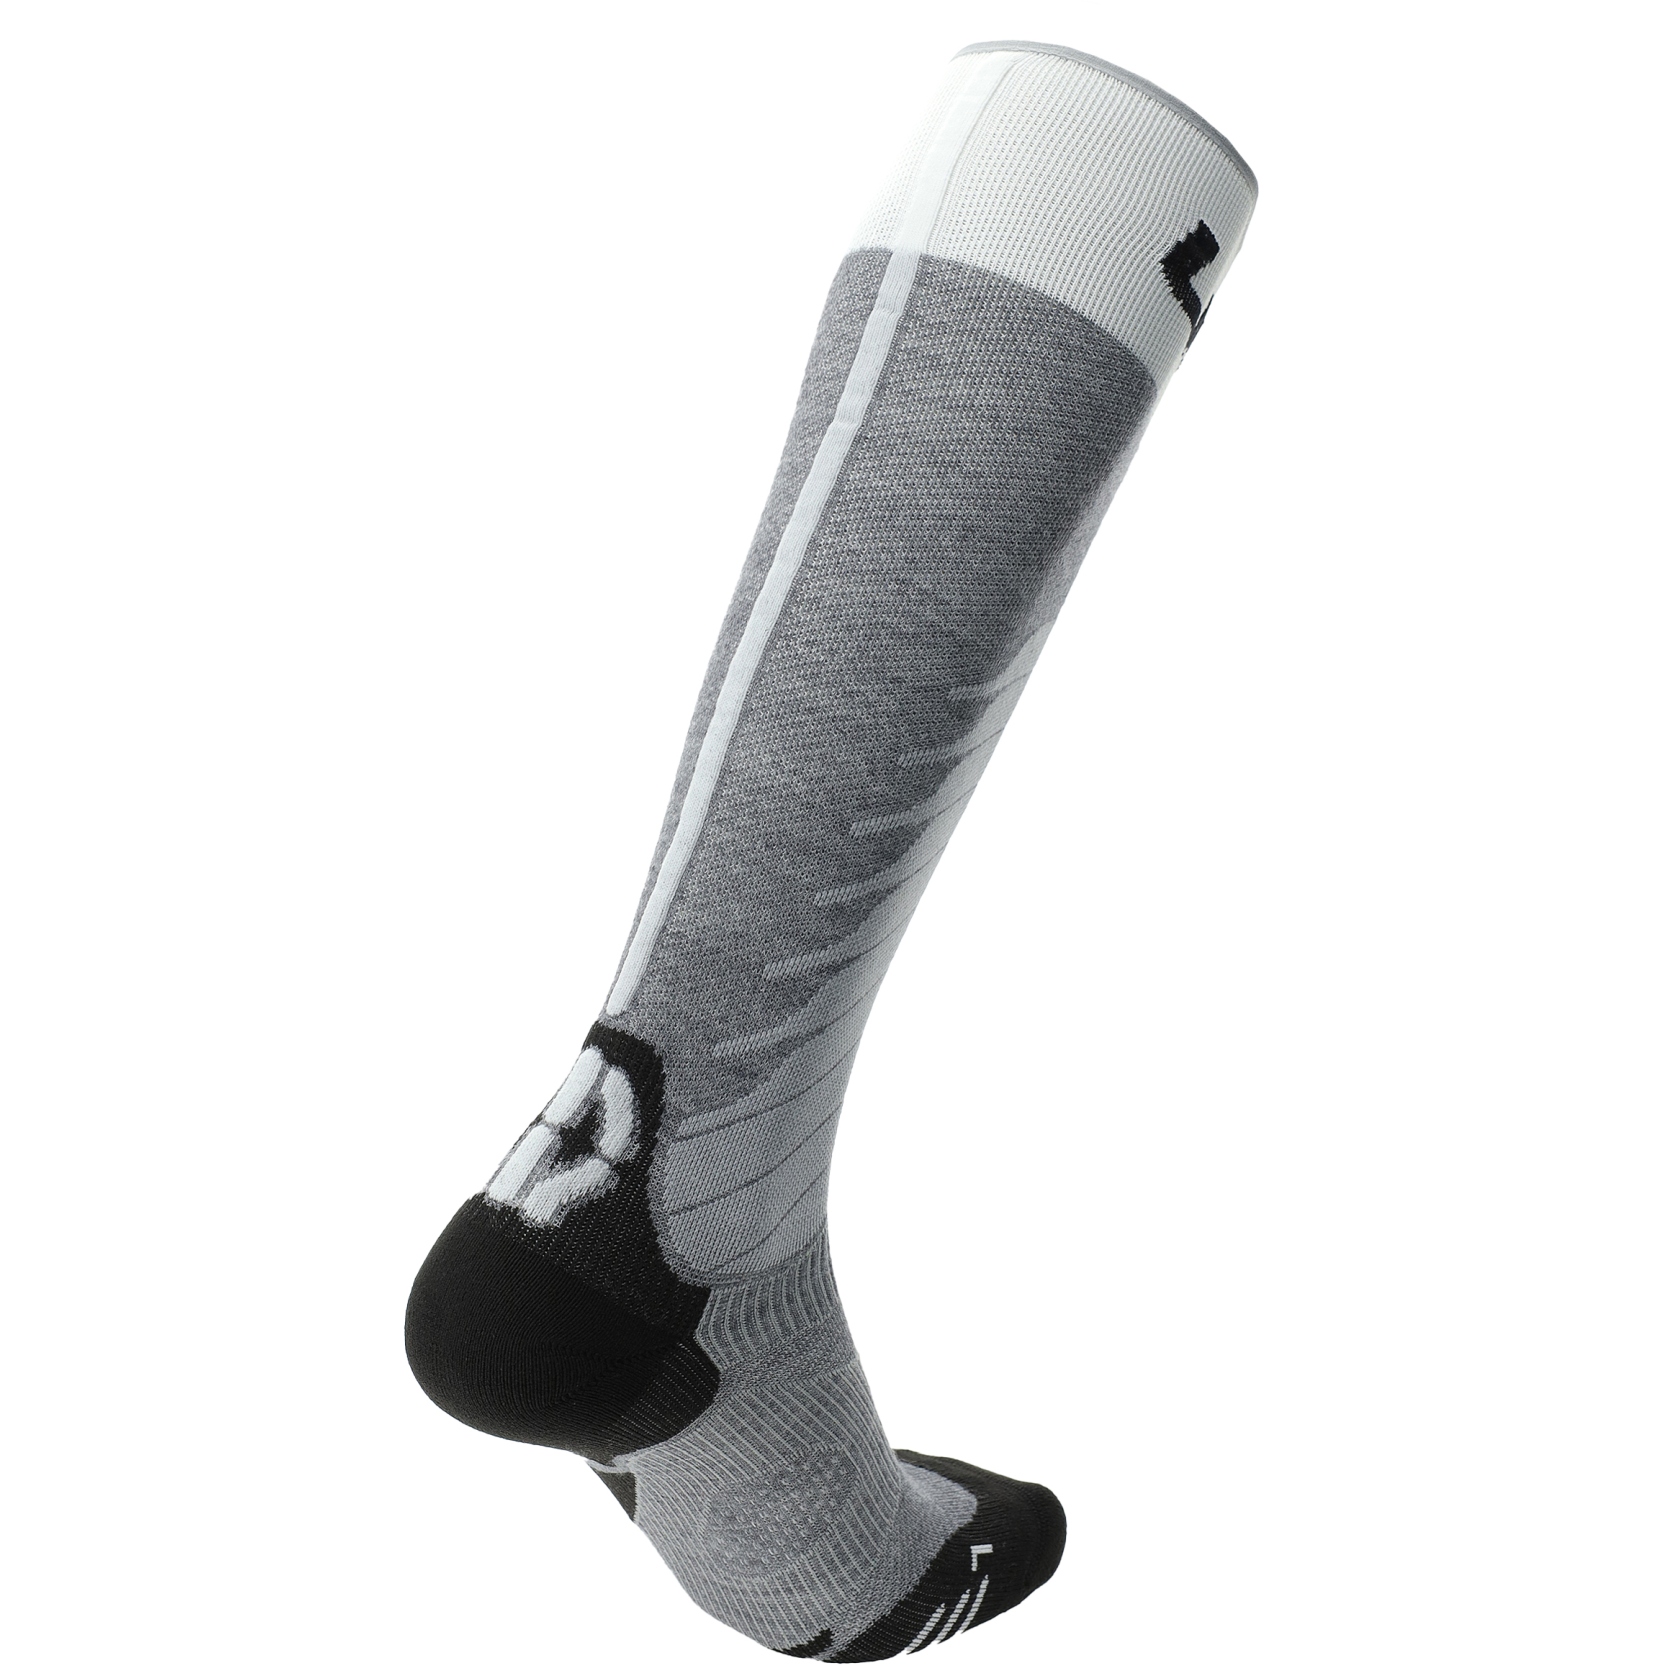 Uyn Lady Ski One Merino Socks Grey Melange/White